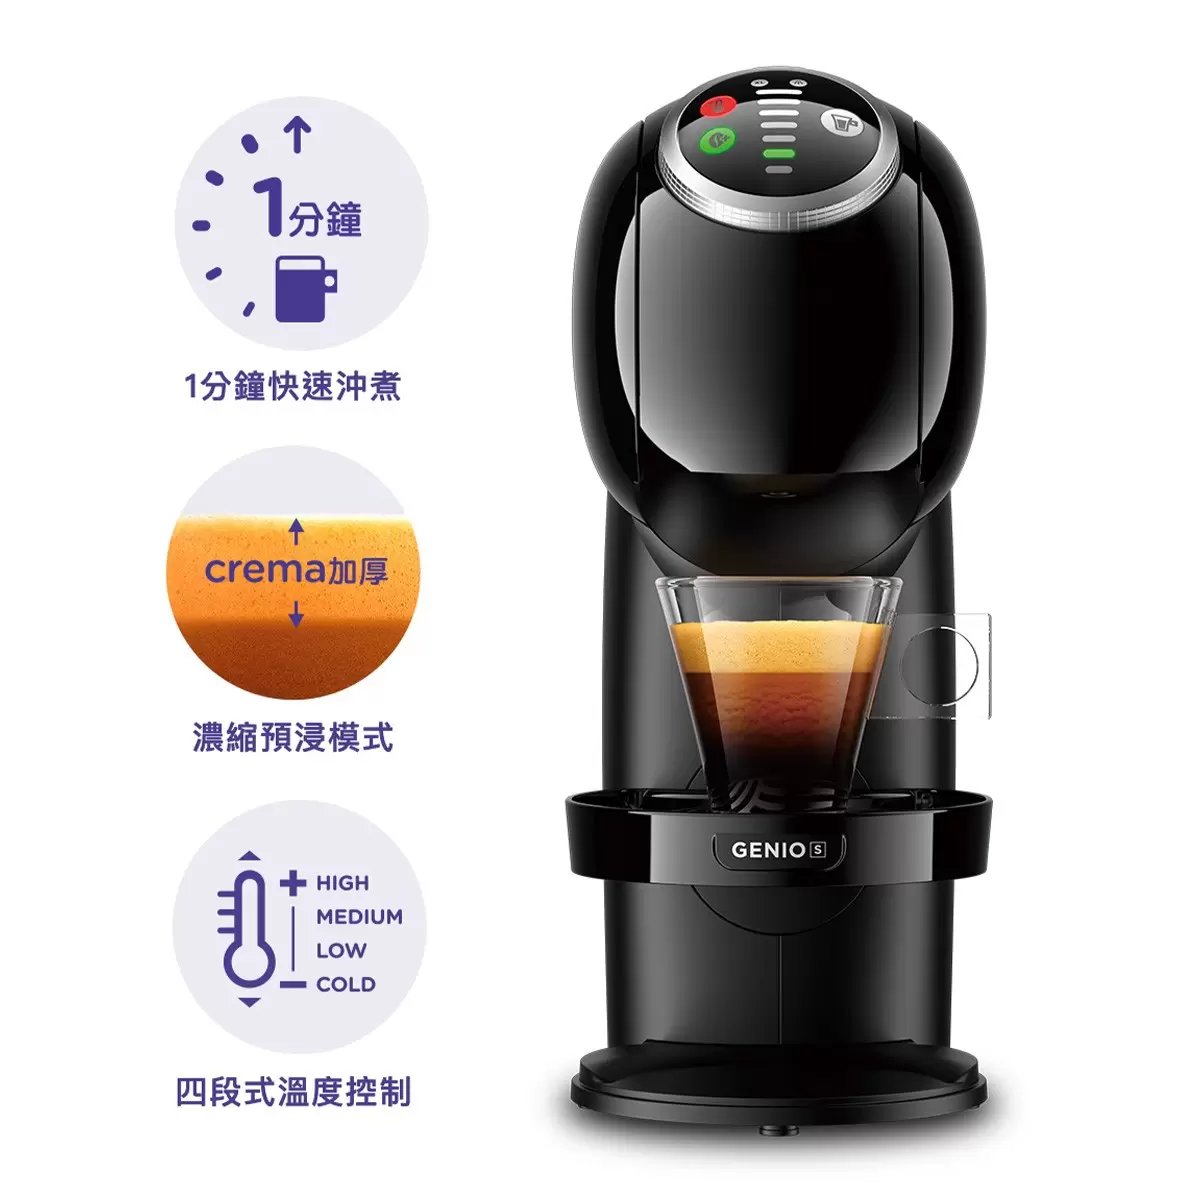 雀巢多趣酷思 Genio S PLUS 義式膠囊咖啡機含128顆咖啡膠囊